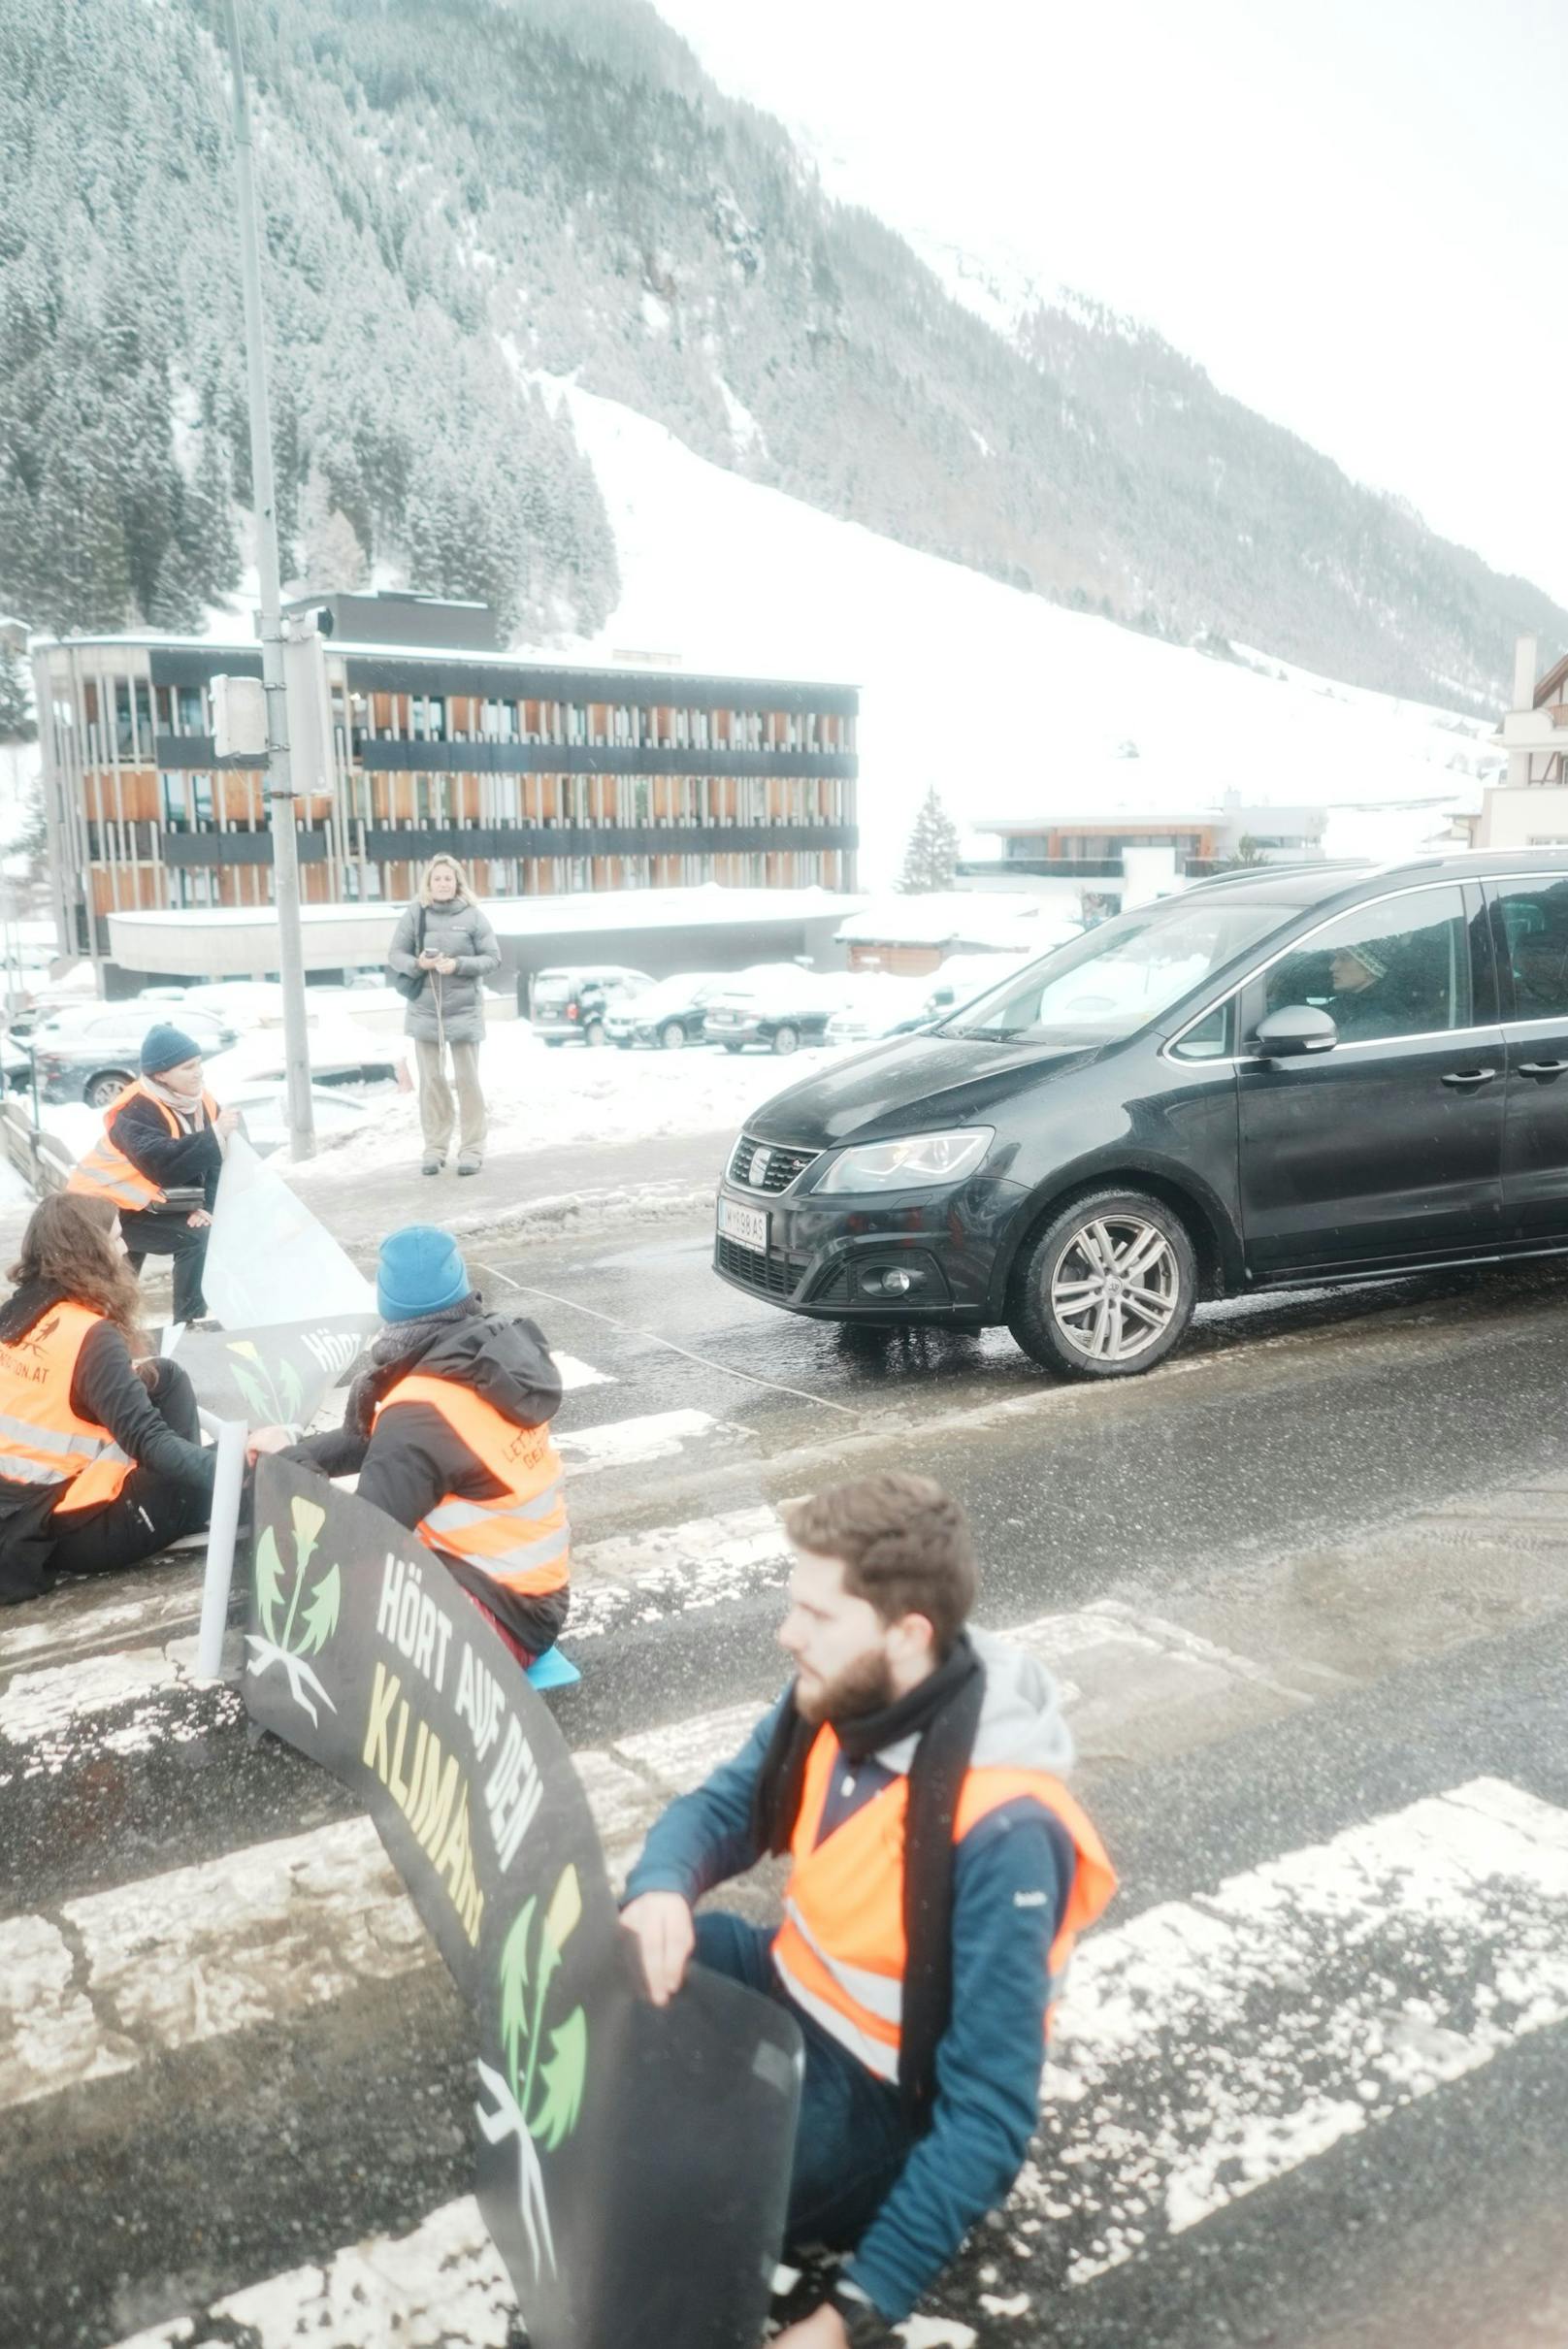 Am Donnerstagvormittag legte die Letzte Generation die Silvrettastraße zum Skigebiet Ischgl lahm.